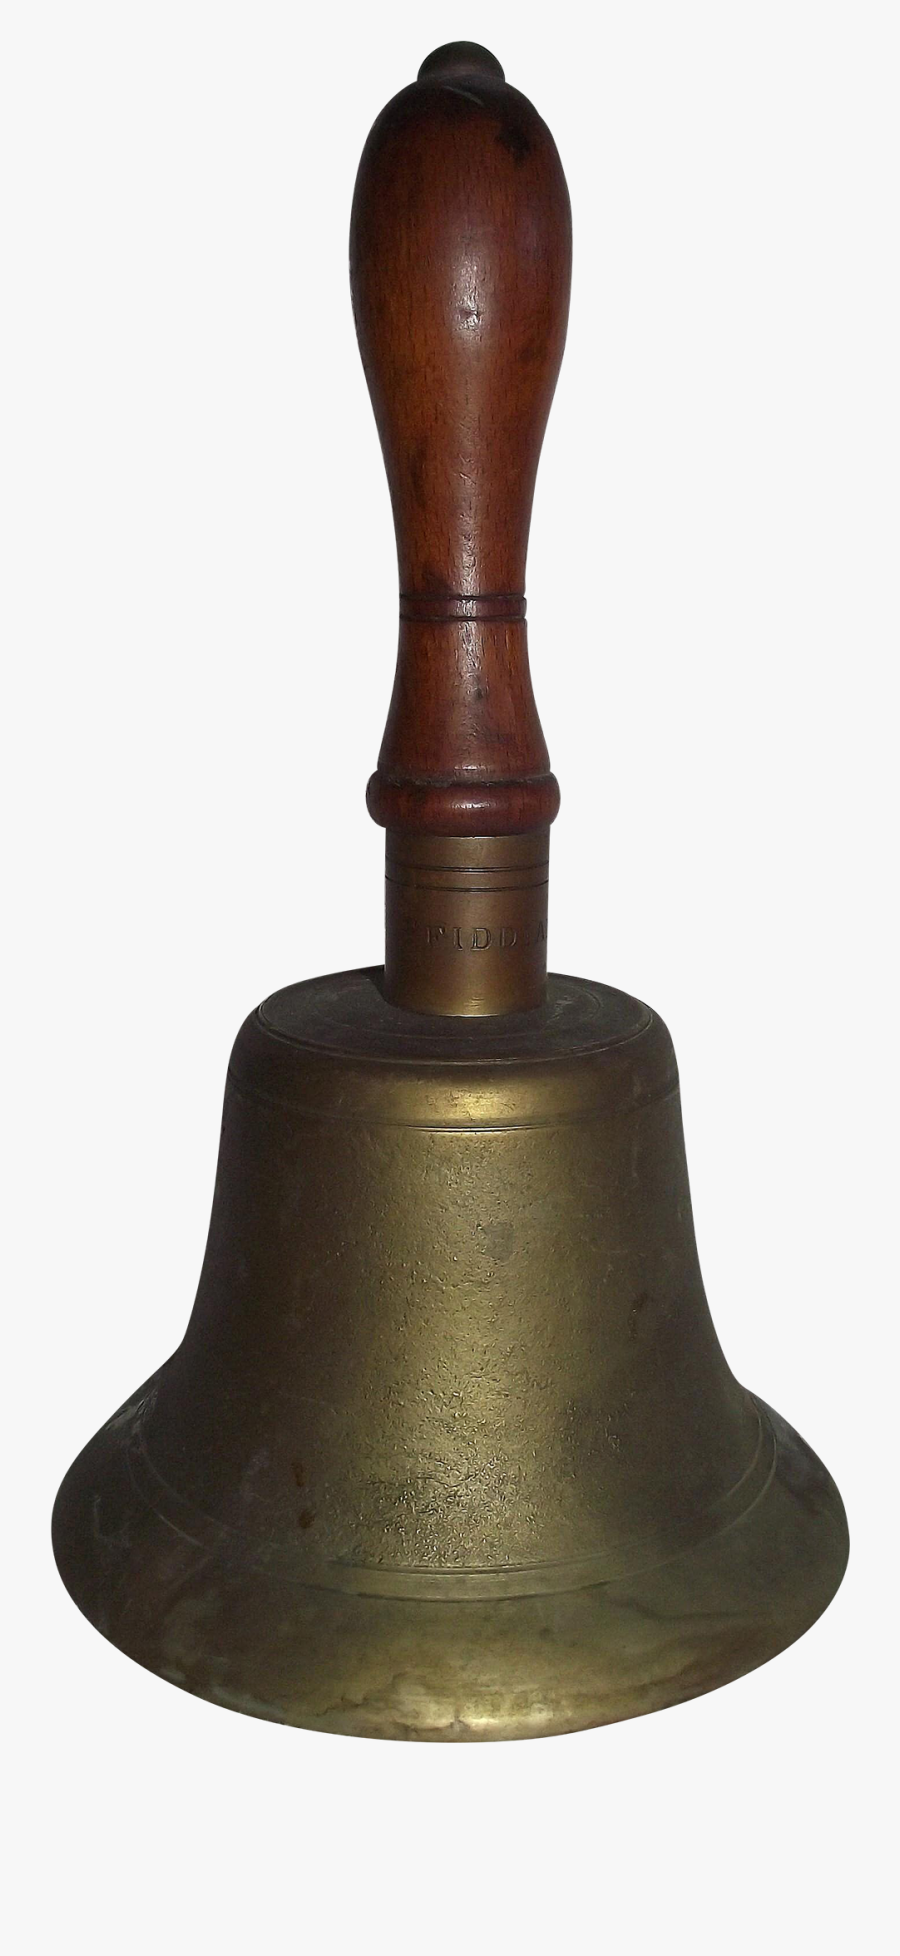 Hand Bell Png - Handbell, Transparent Clipart